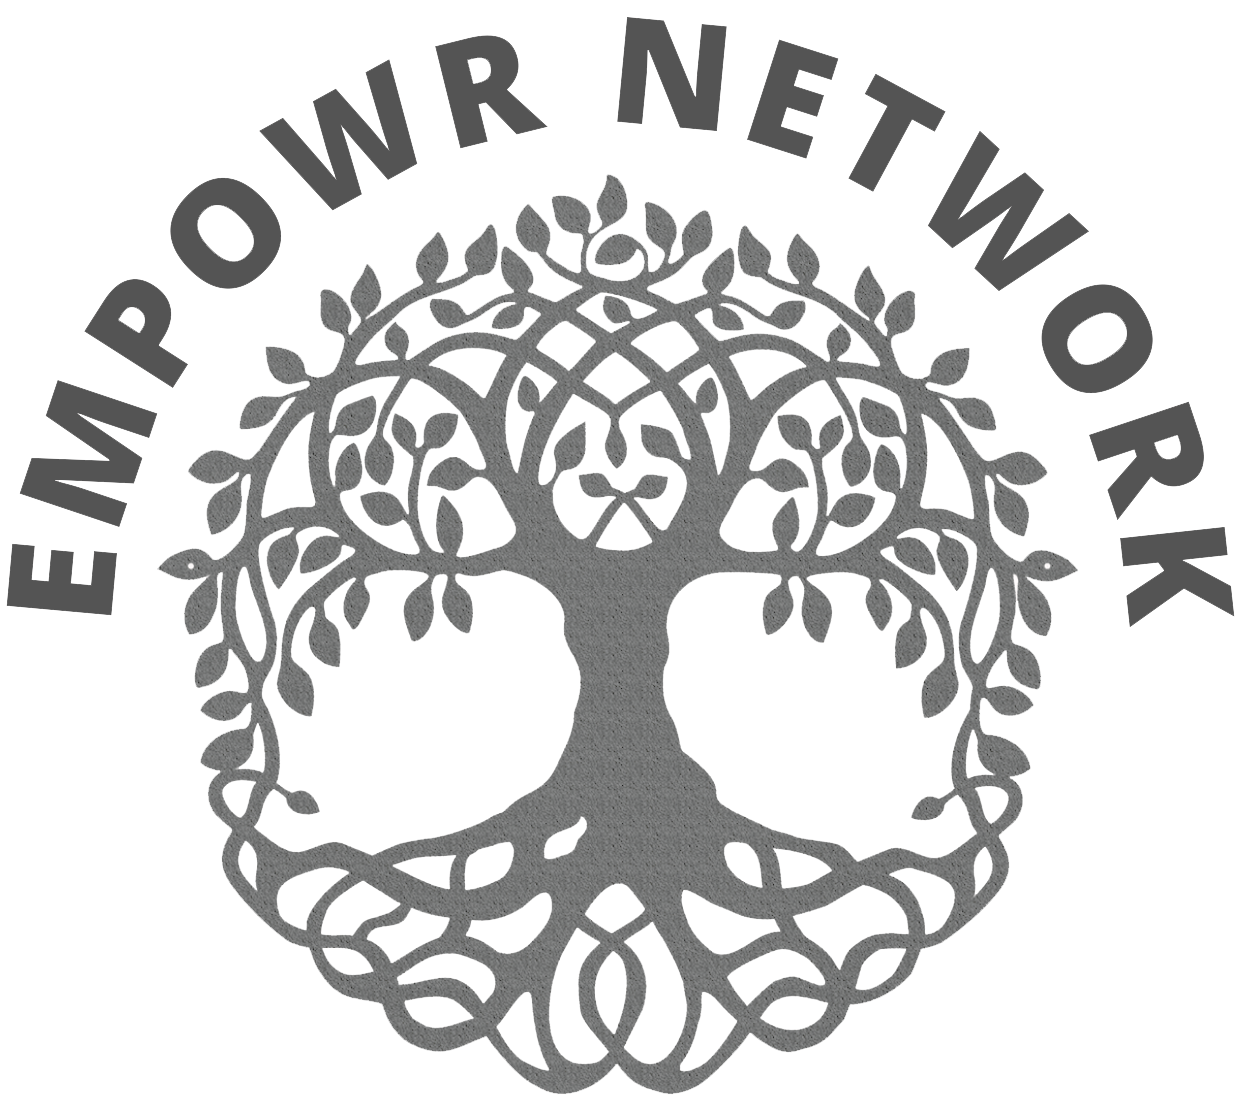 EmpowR Network 